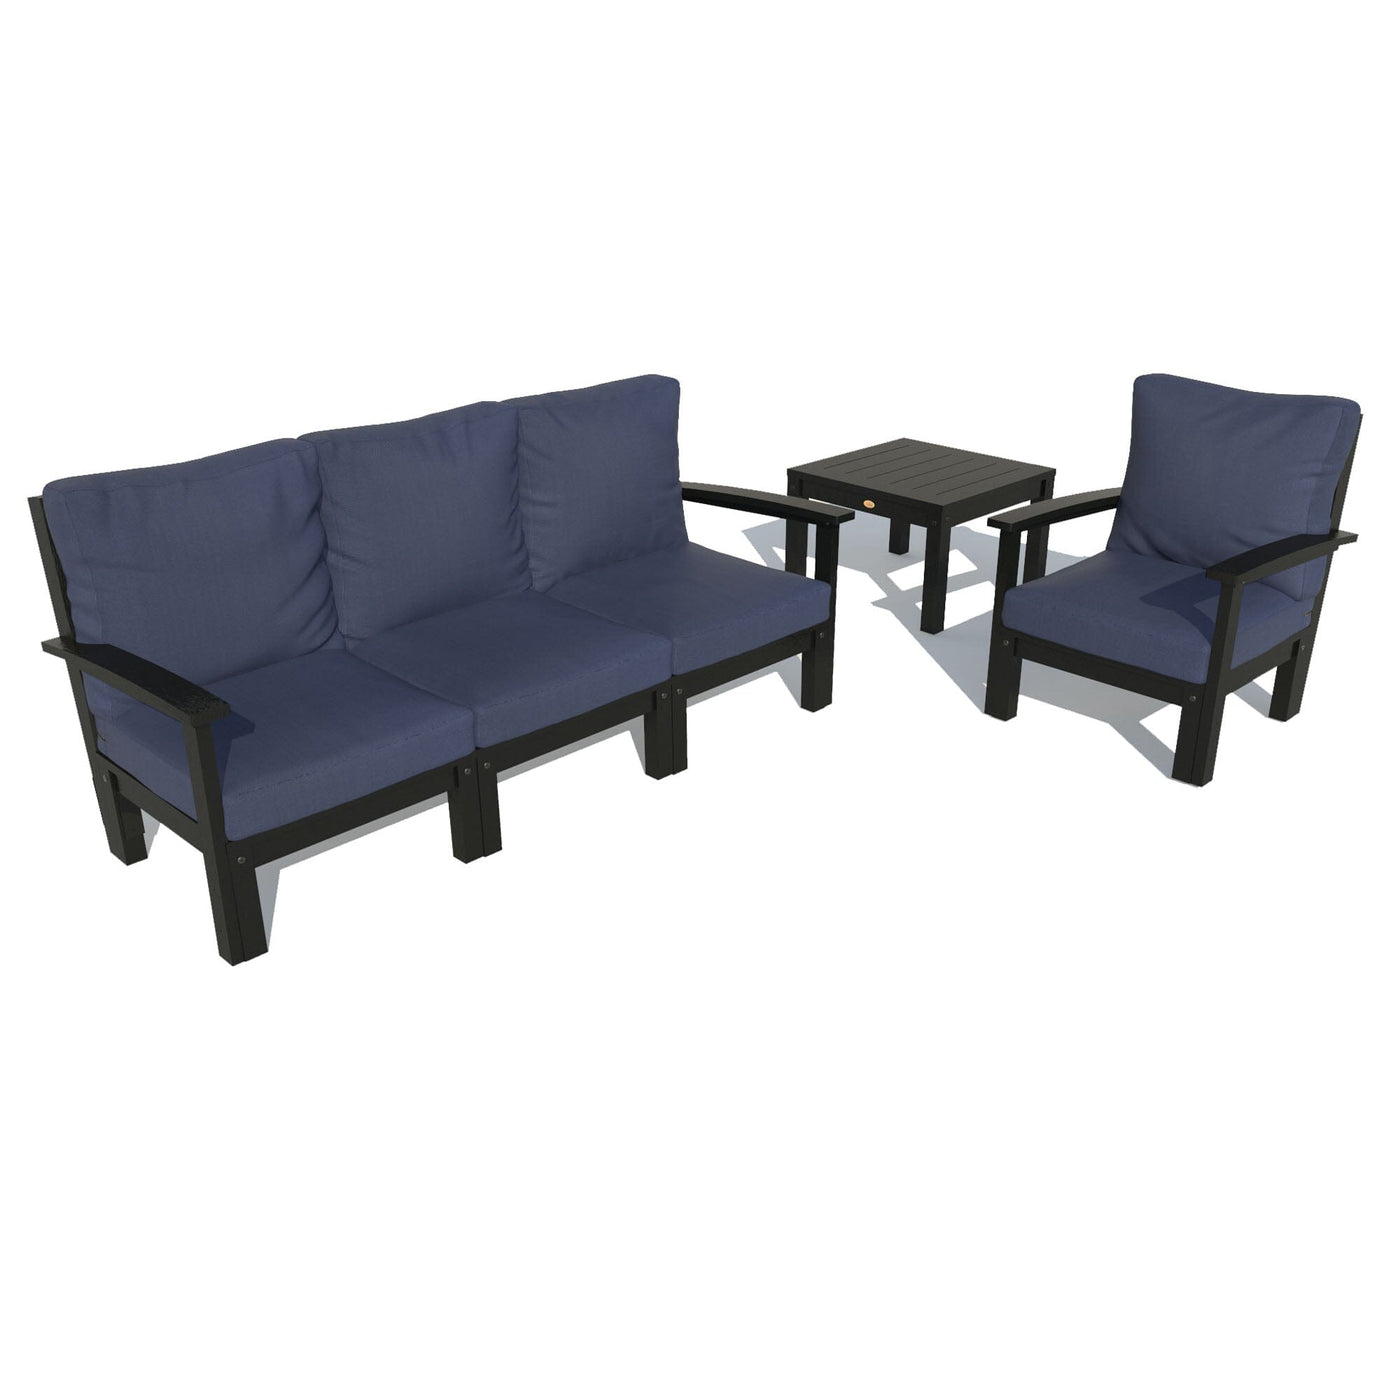 Bespoke Deep Seating: Sofa, Chair, and Side Table Deep Seating Highwood USA Navy Black 